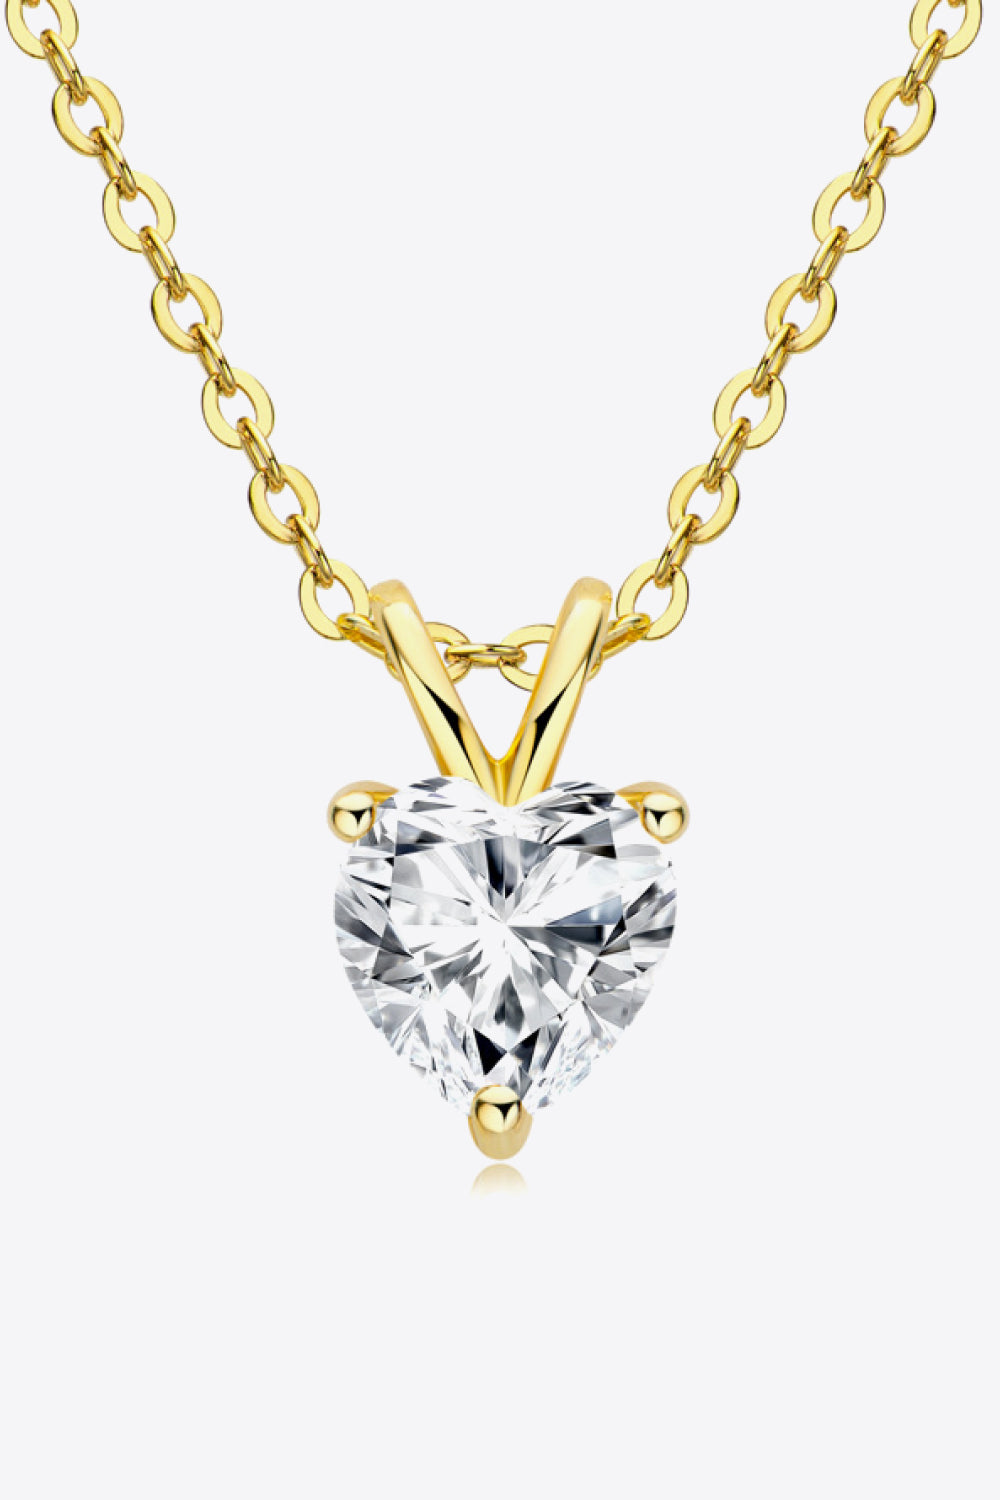 1 Carat Moissanite Heart-Shaped Pendant Necklace - DromedarShop.com Online Boutique